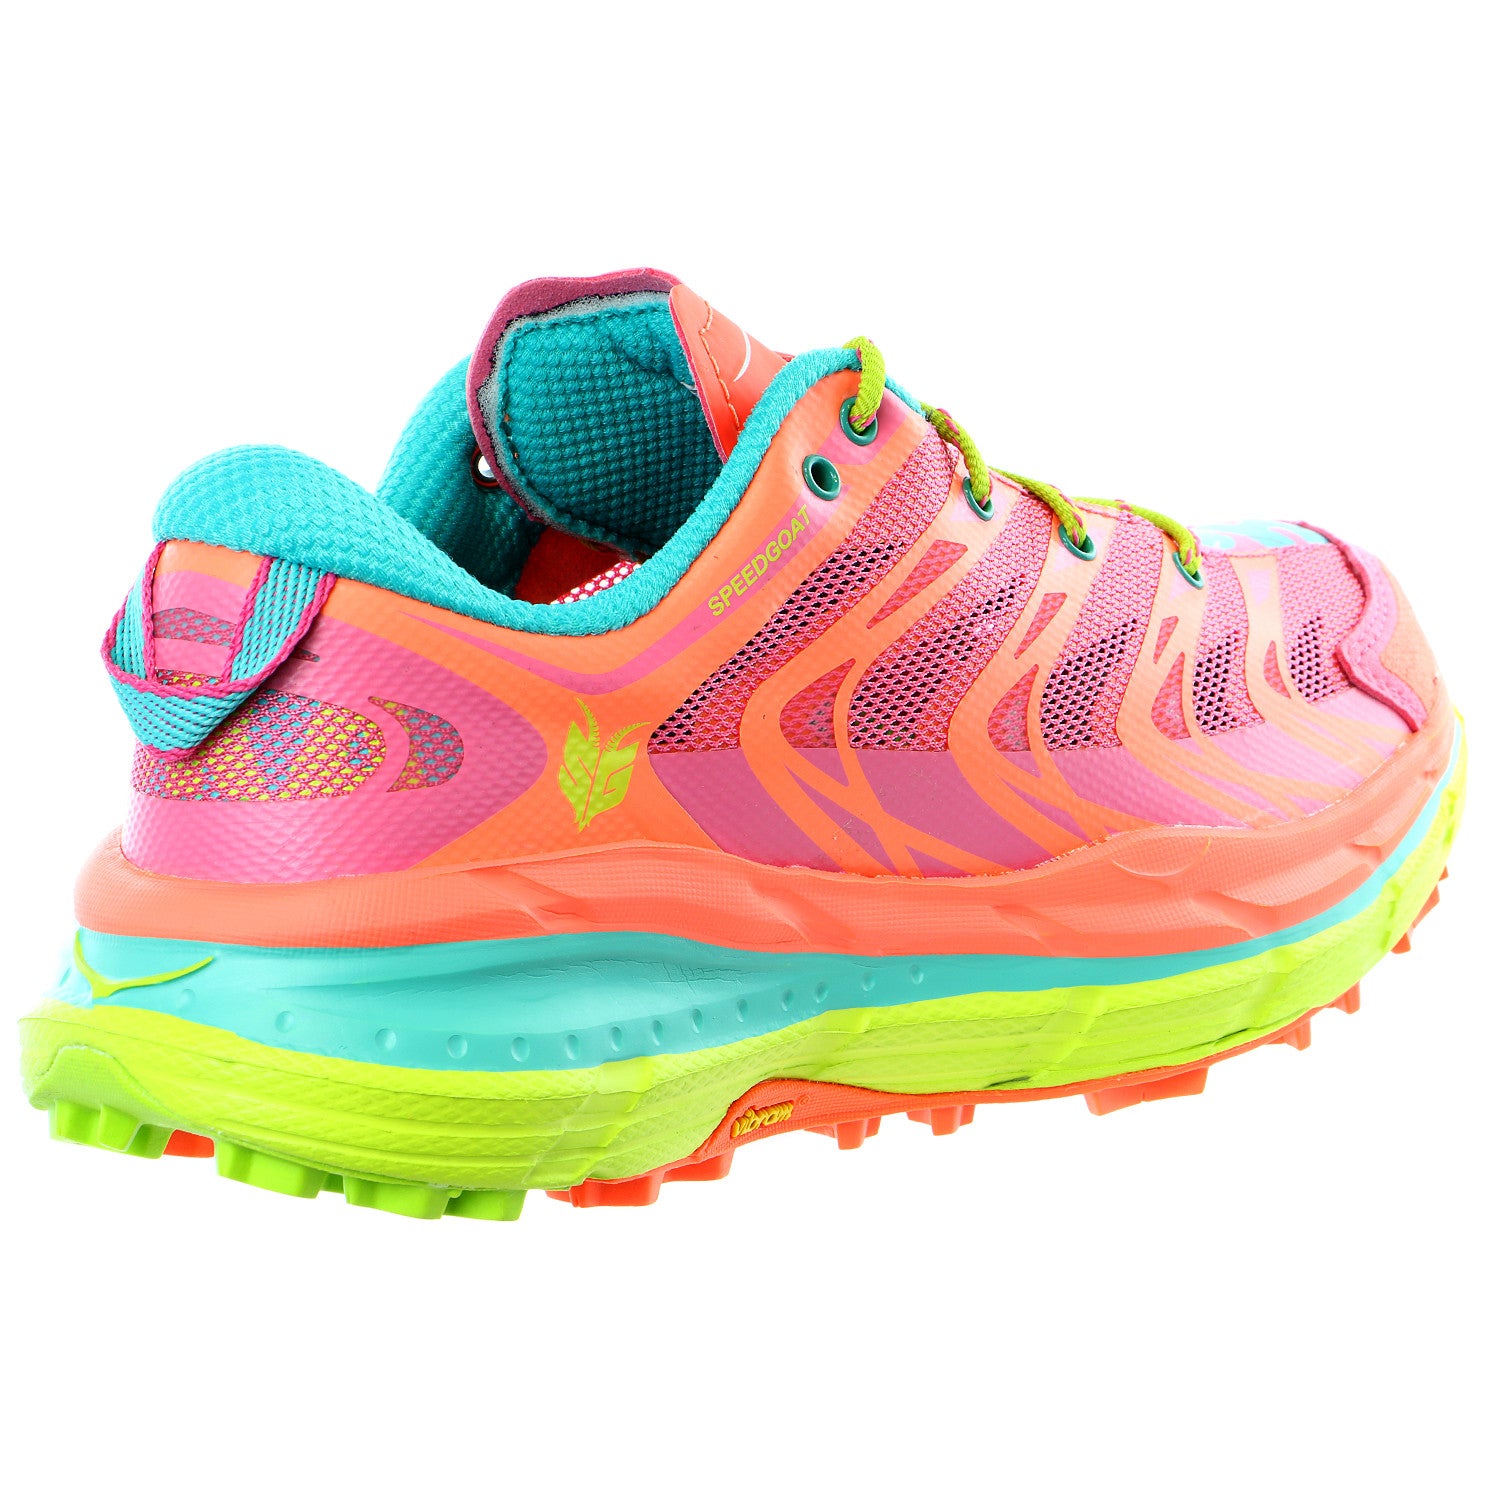 hoka speedgoat women's trail running shoes